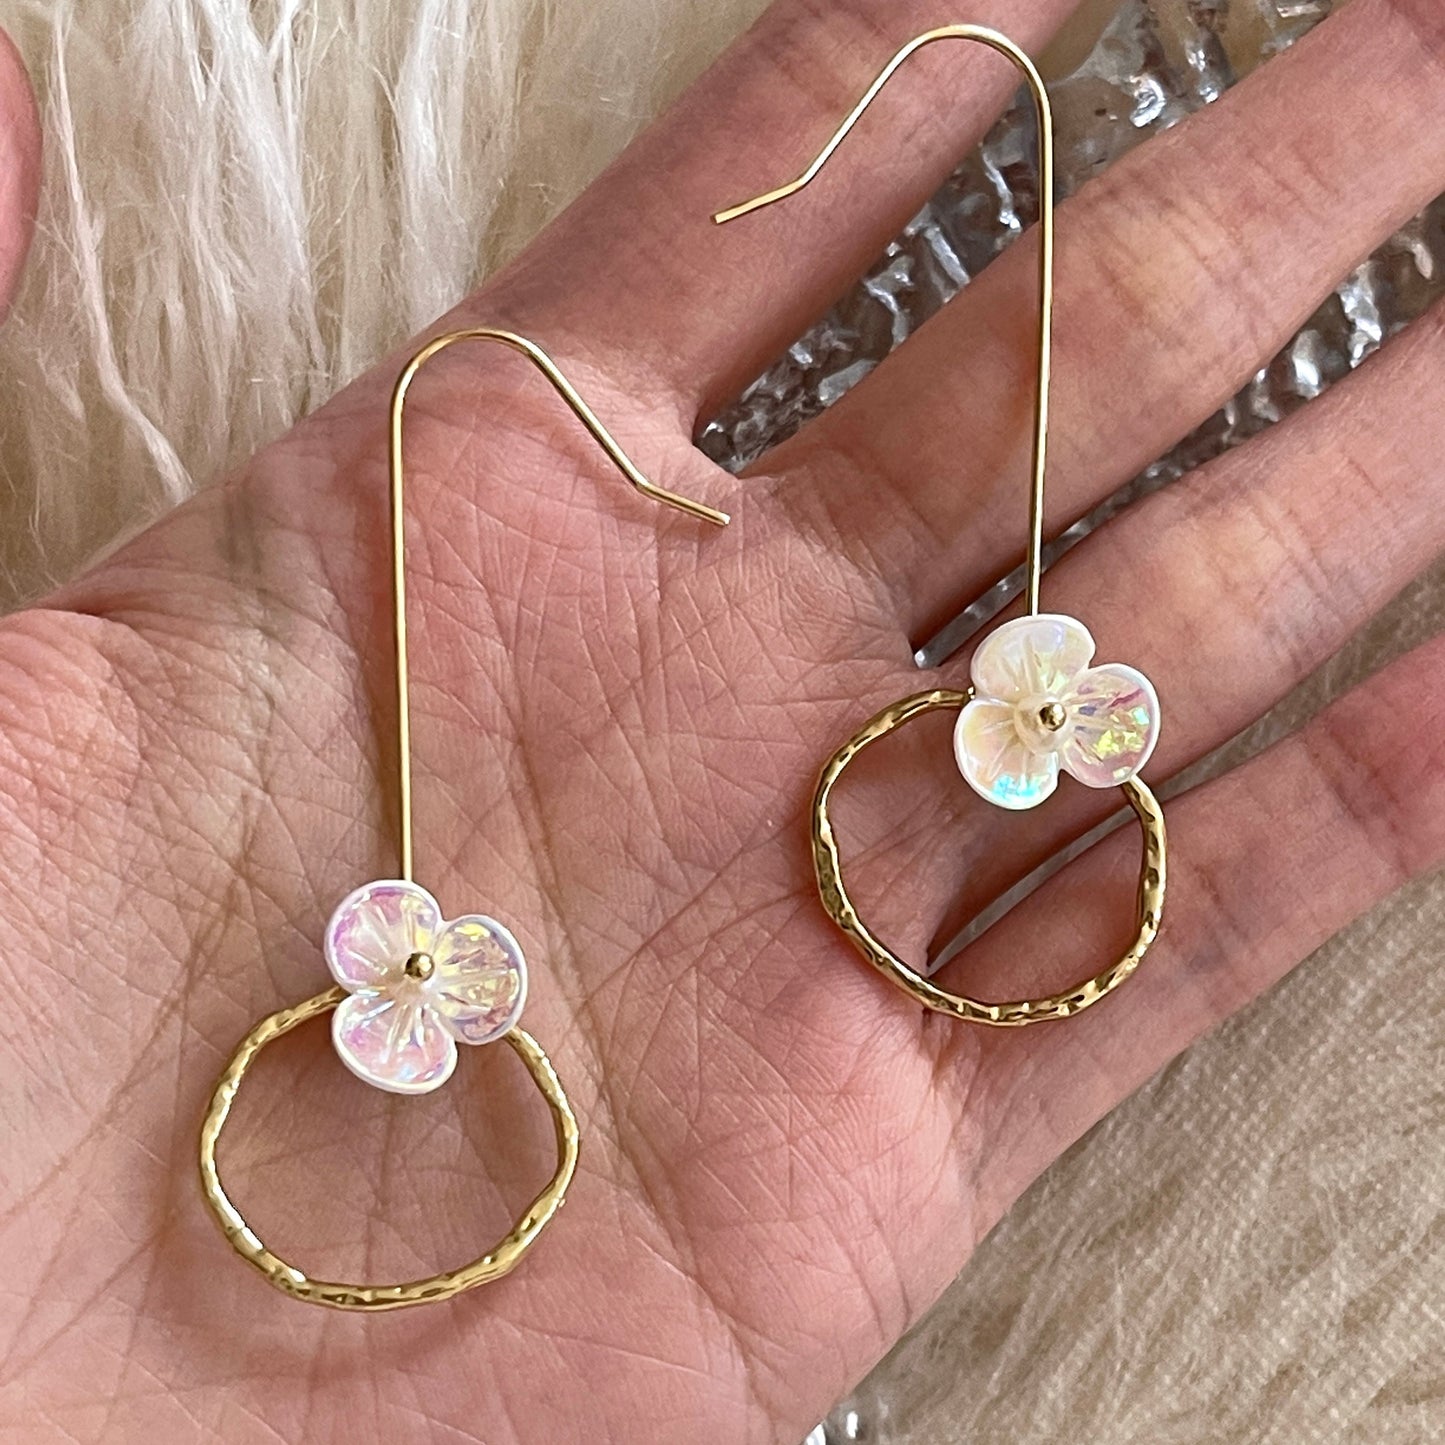 Gold hoop dangle earrings, color changing flower earrings, loop ring drop earrings, unique statement dangle, geometric earrings, y2k quirky